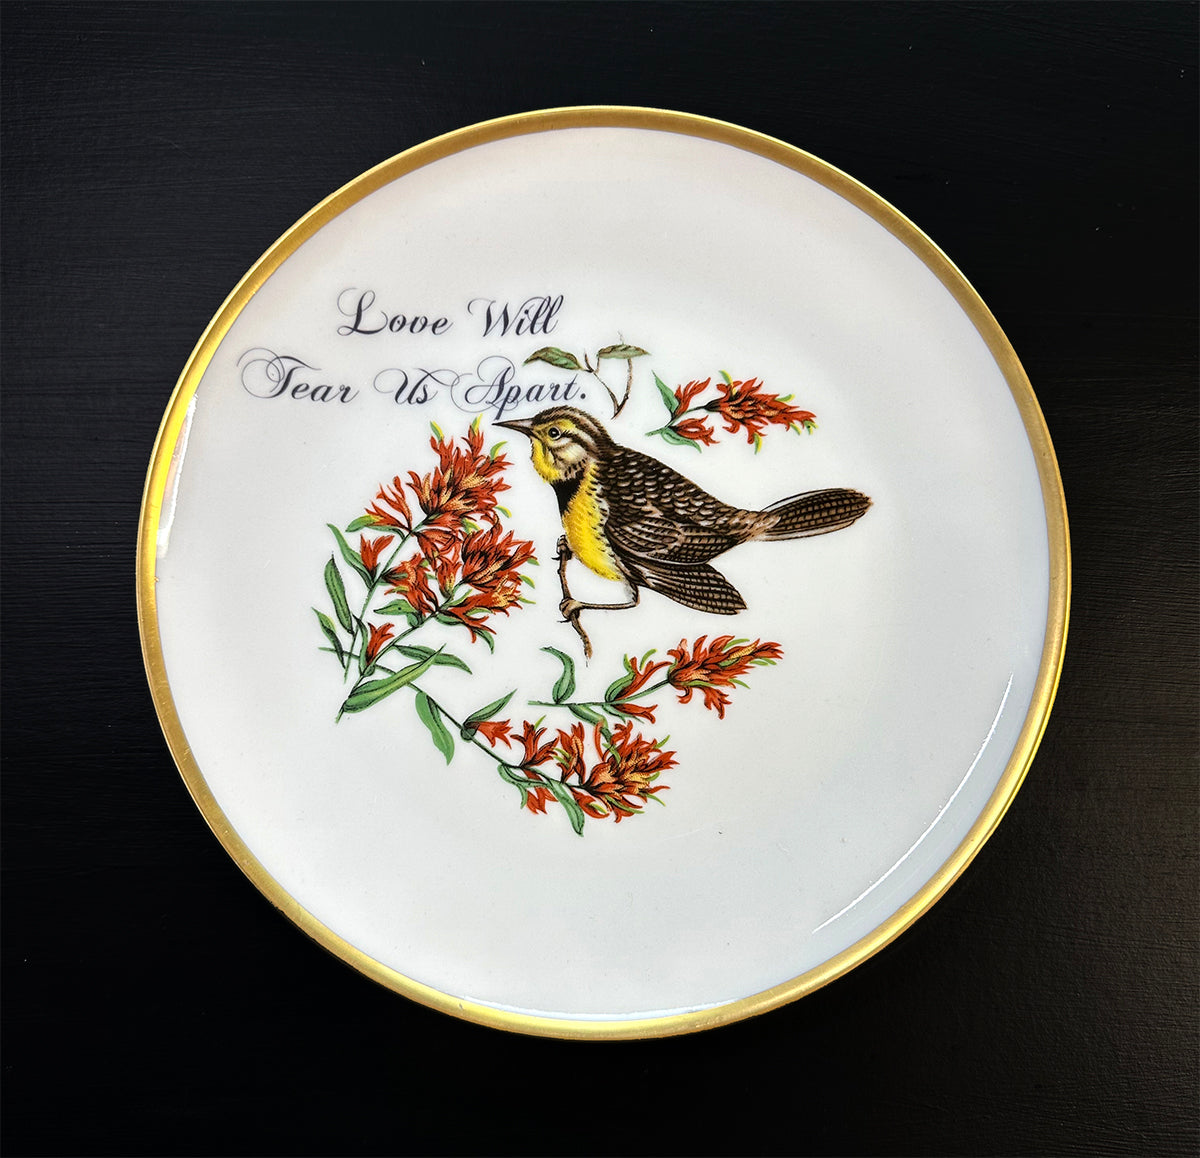 Vintage Art Plate - Honest Birds - Snarky Bird - "Love Will Tear Us Apart."